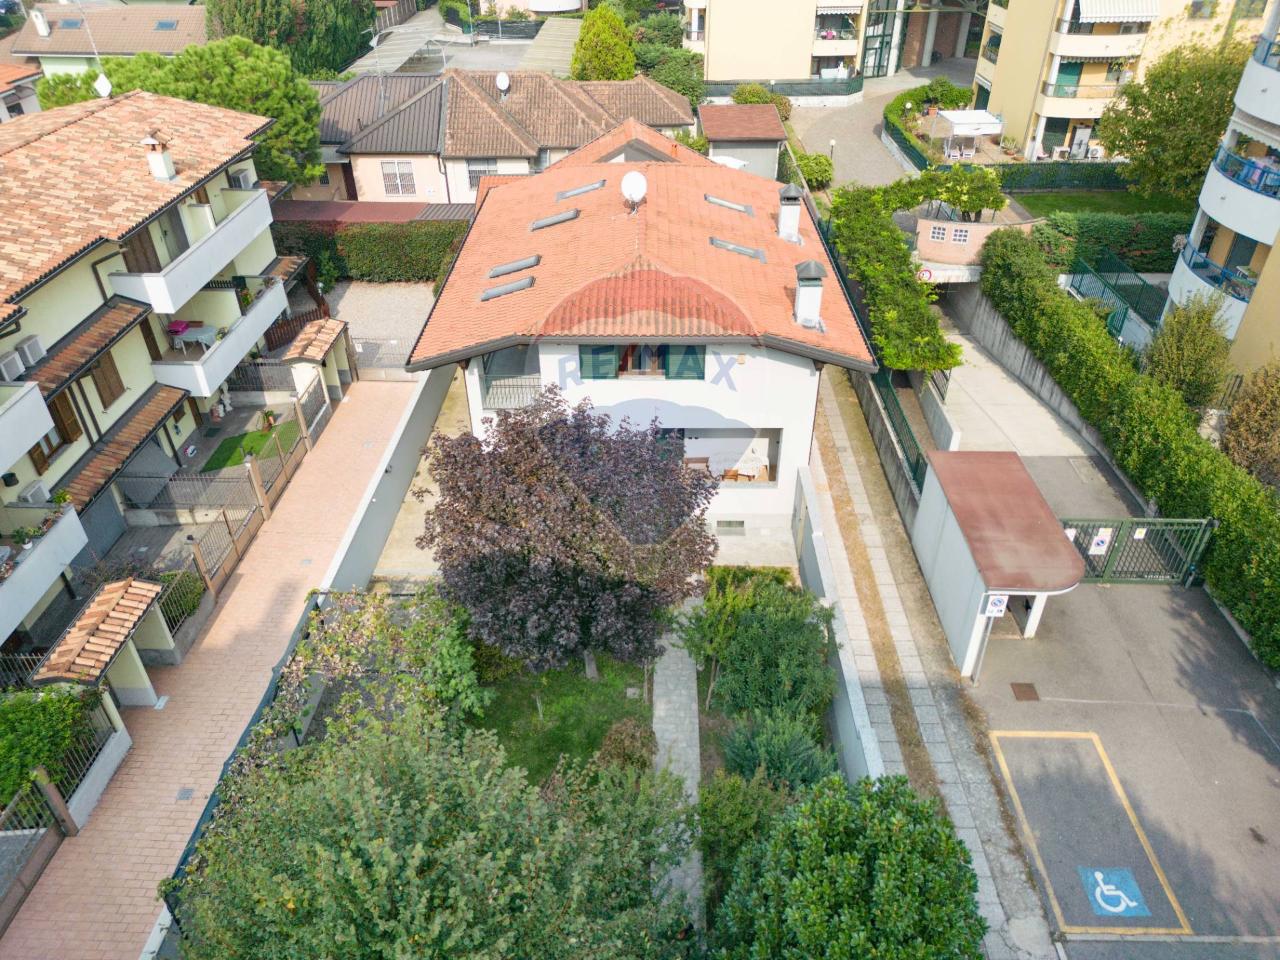 Villa in vendita a Vanzago